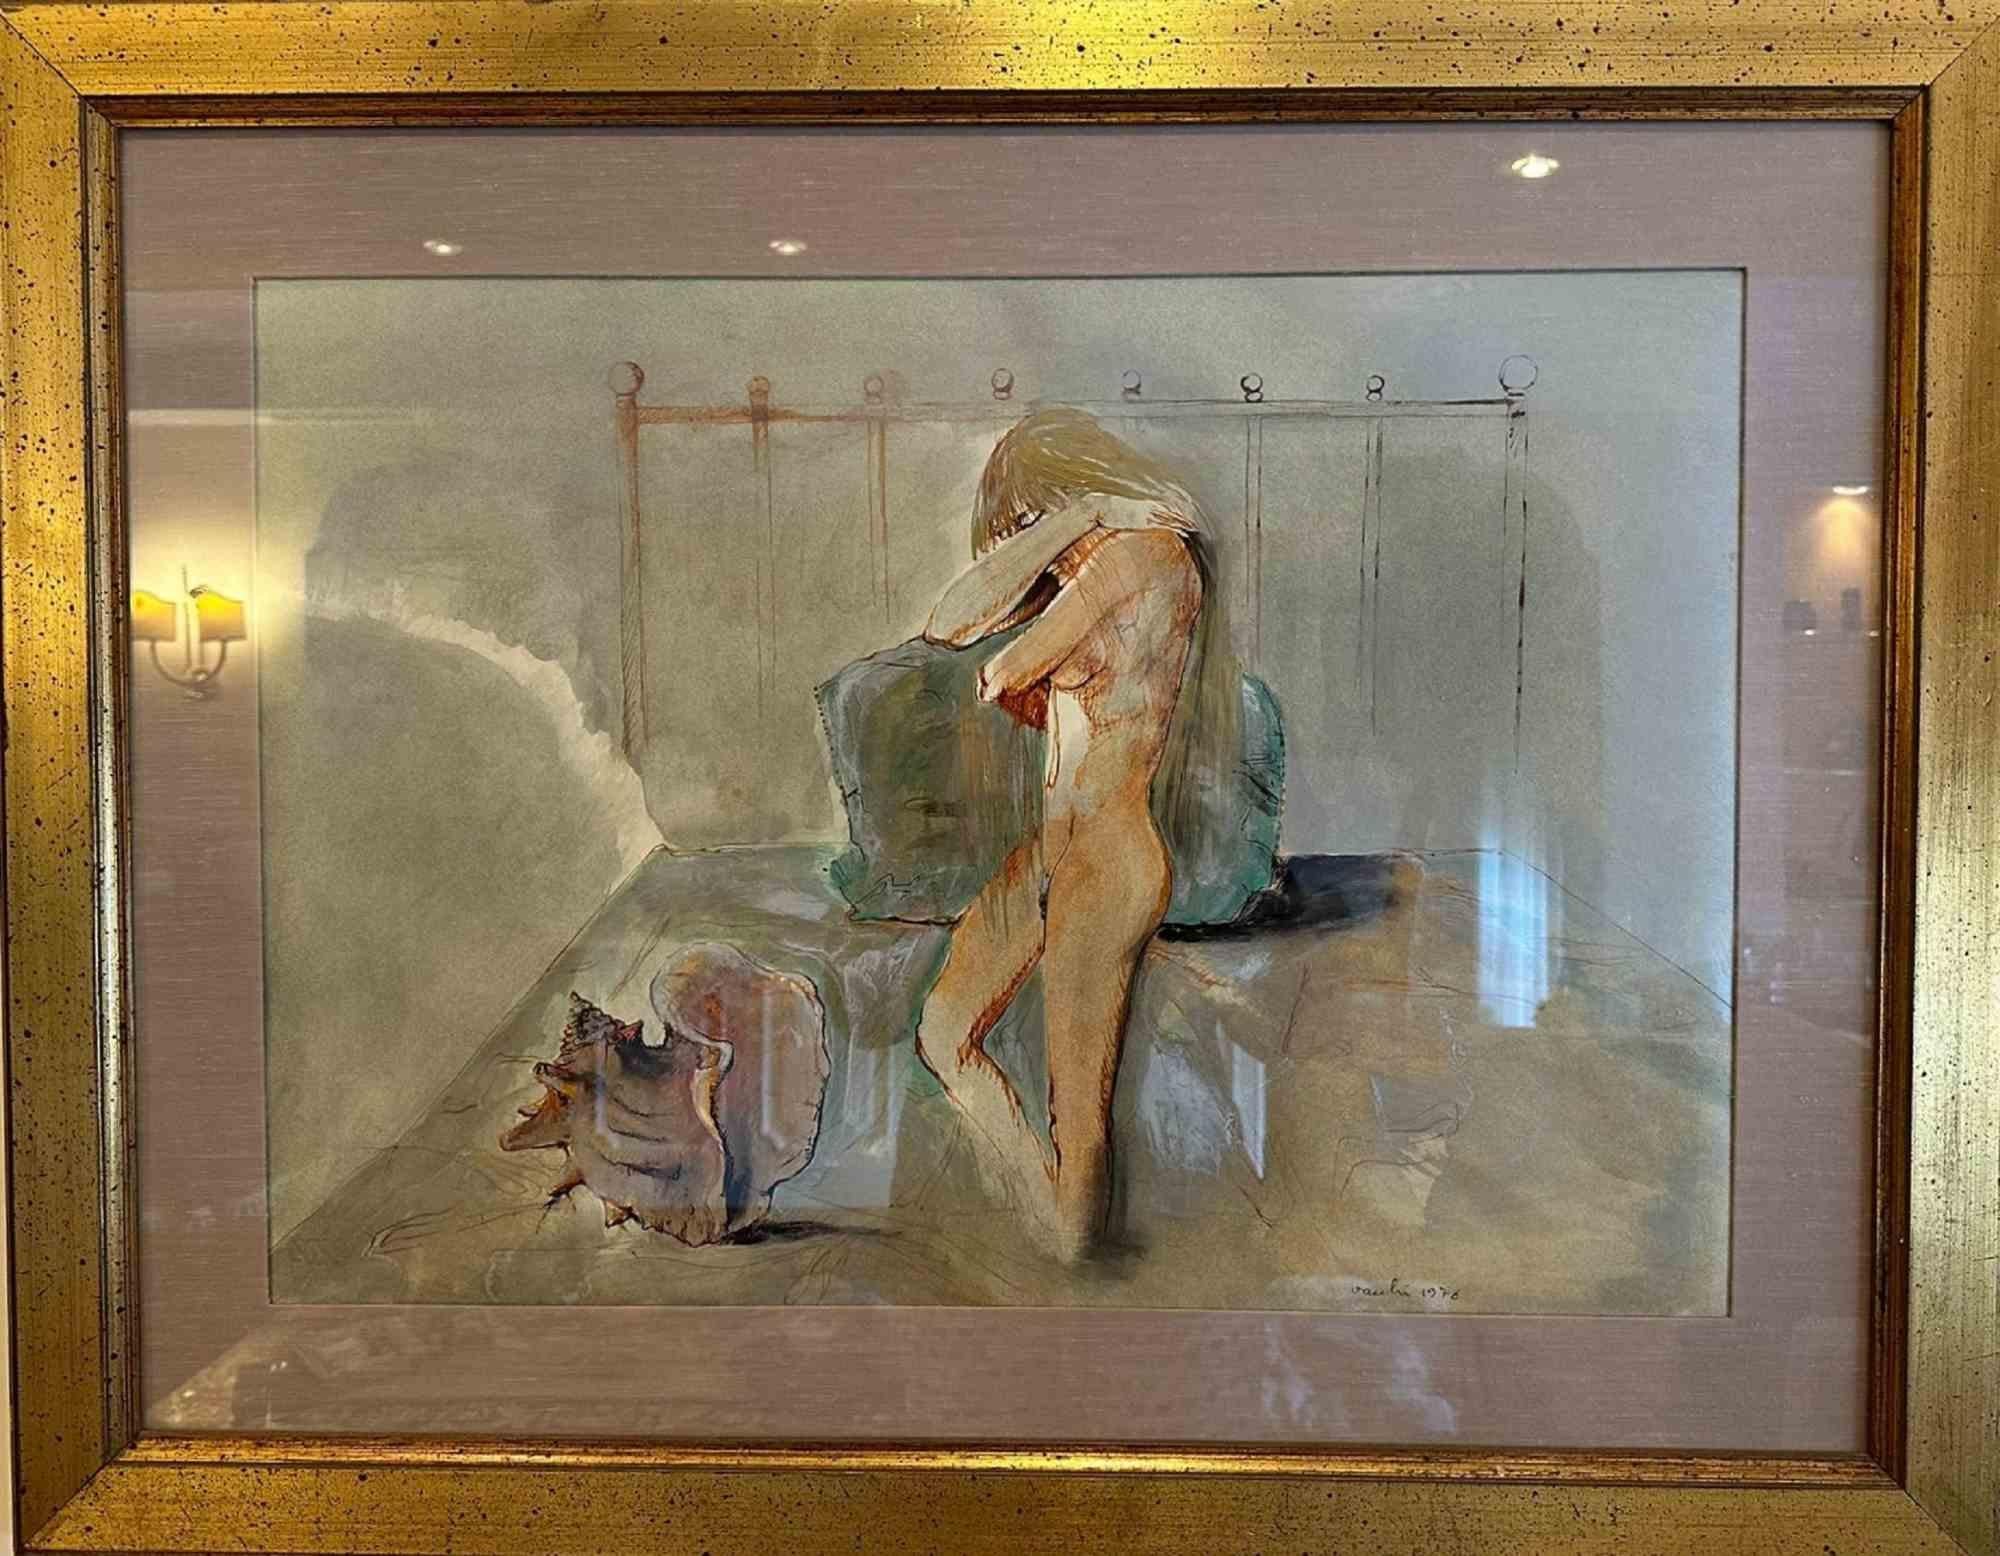 Frau mit Muschel ist ein Ölgemälde auf Leinwand von Sergio Vacchi aus dem Jahr 1976.

Handsigniert und datiert auf der Unterseite. Einschließlich eines goldenen Rahmens. Abmessungen des Rahmens: 75x93 cm.

Sehr guter Zustand.